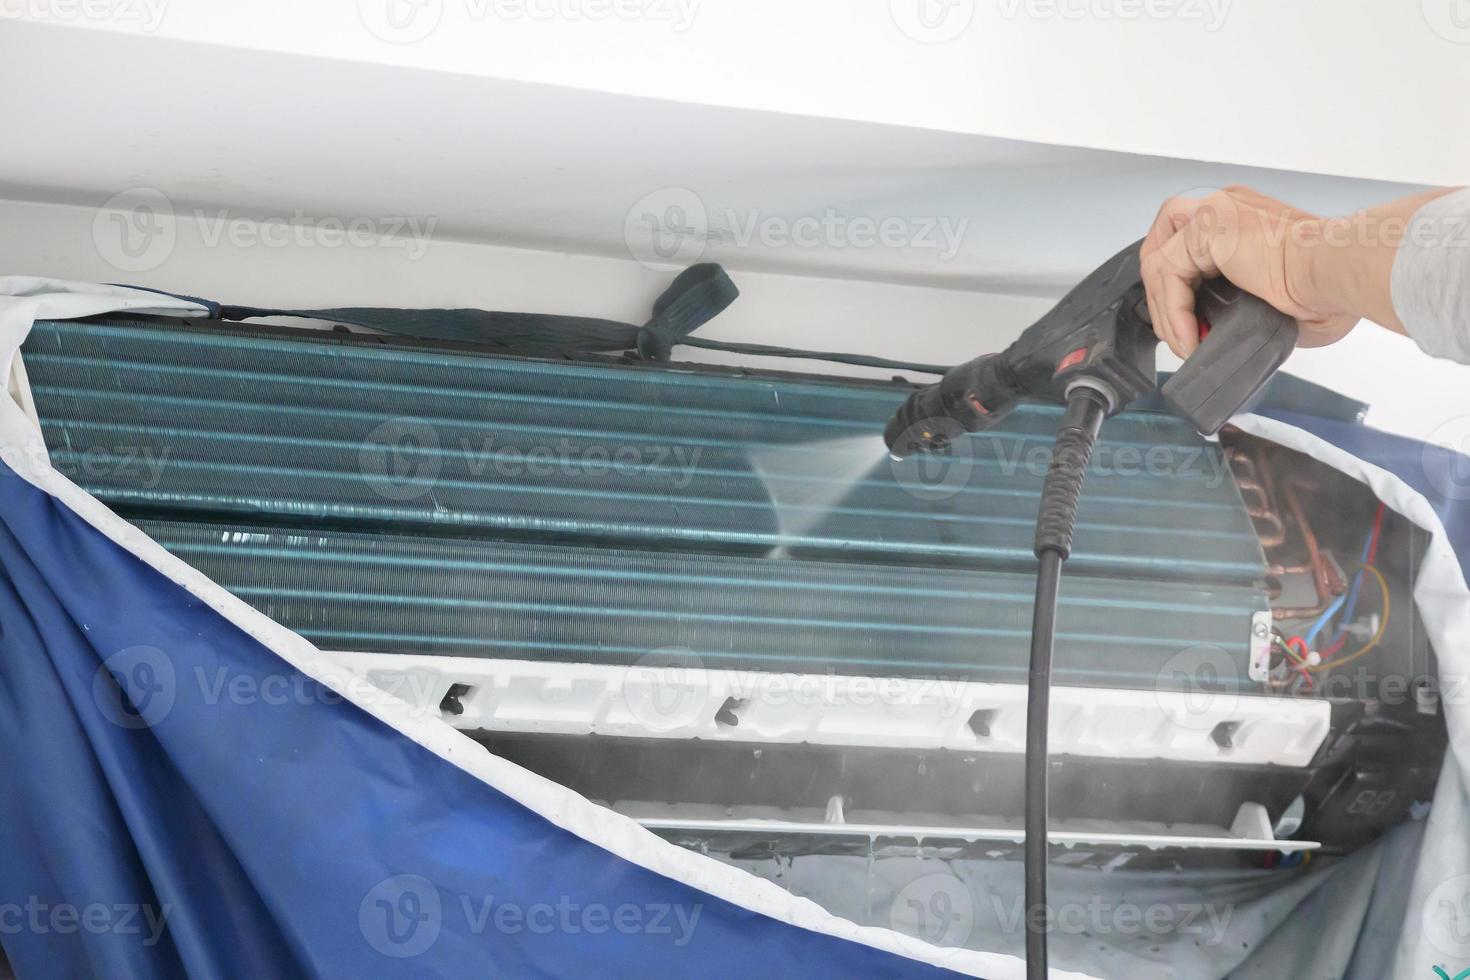 lucht conditioning schoonmaak onderhoud met water verstuiven foto